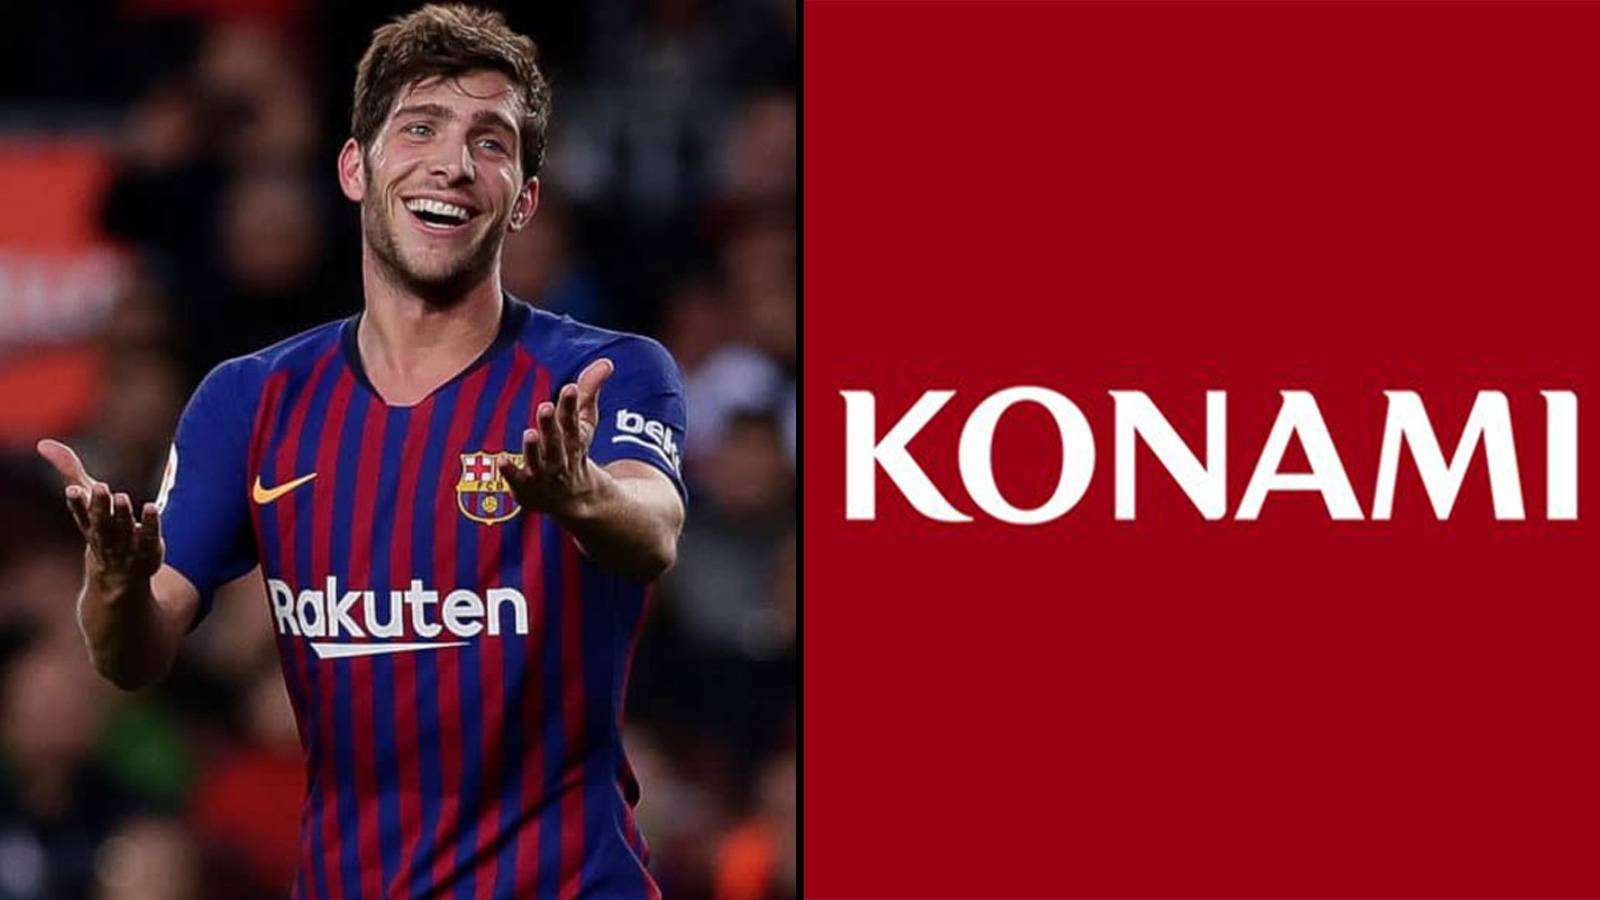 Le joueur du FC Barcelone, Sergi Roberto et le logo officiel de Konami